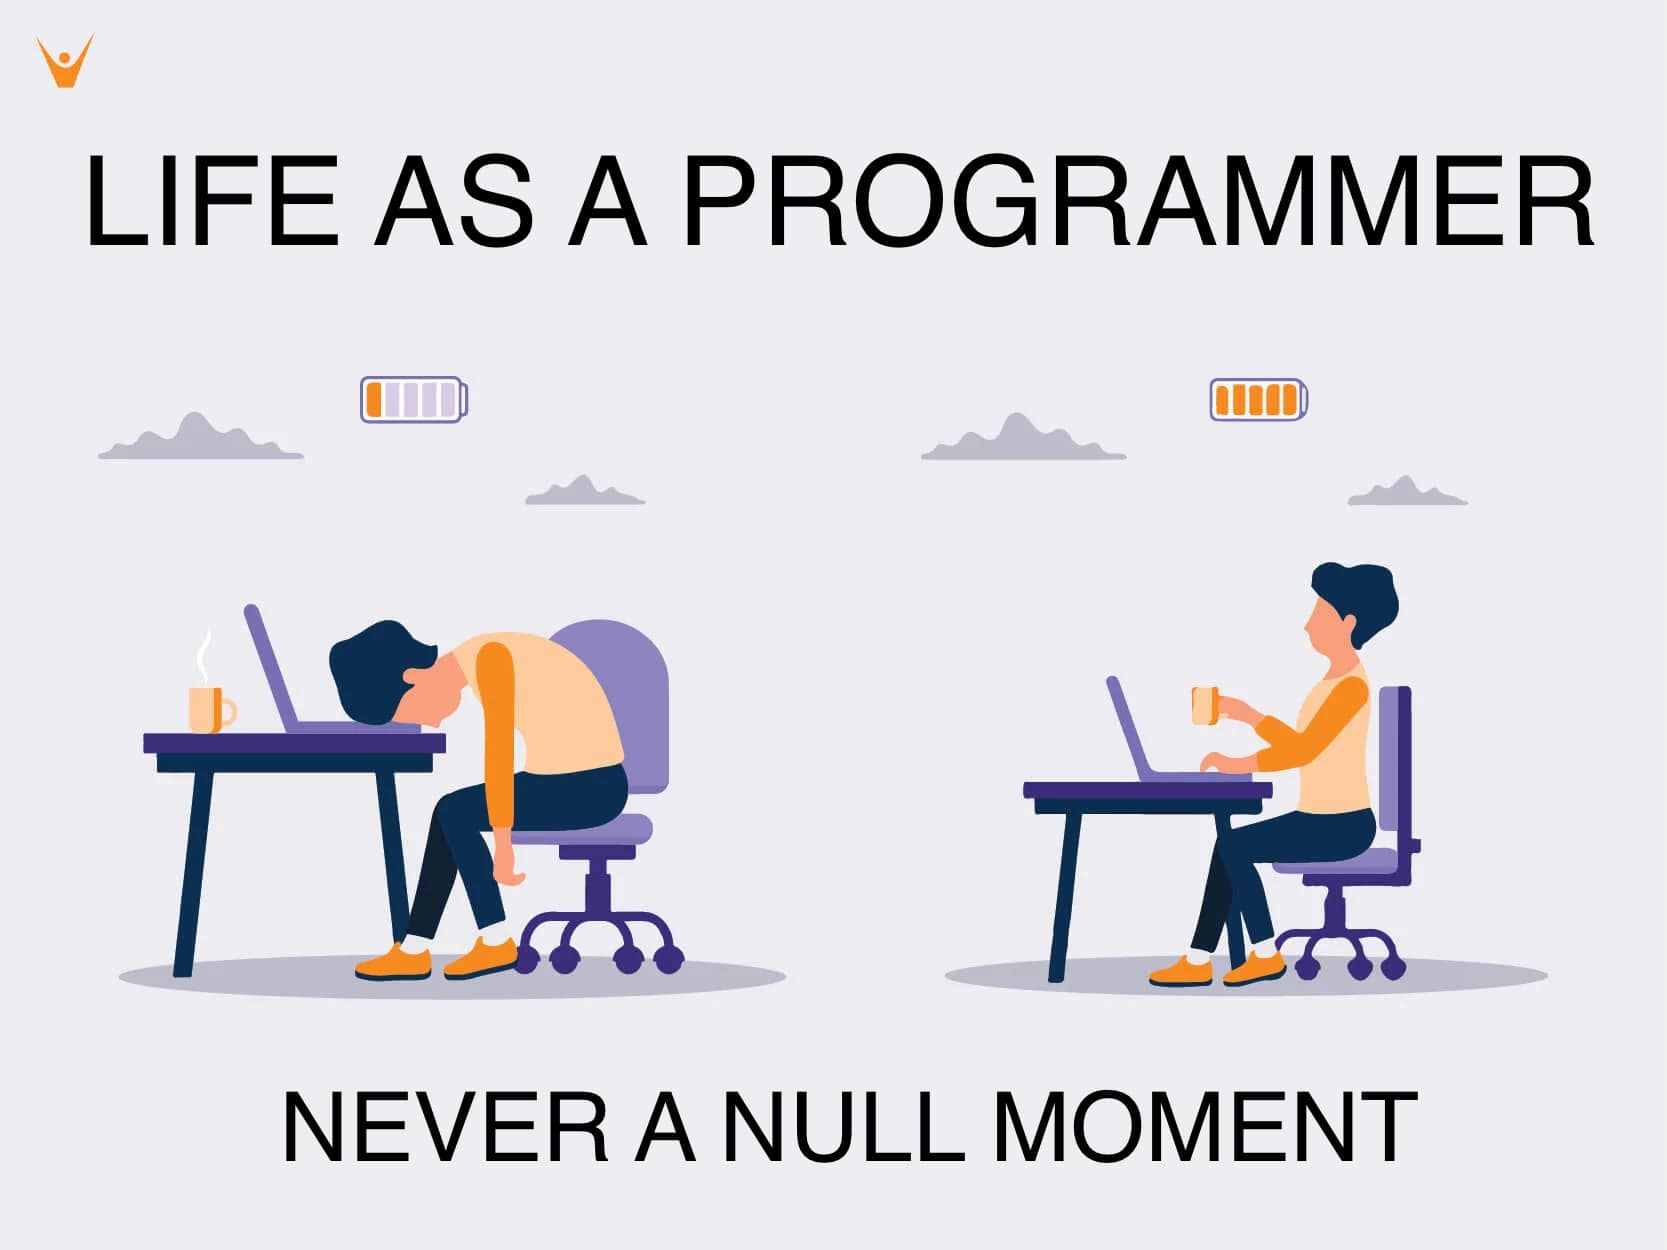 Life as a Programmerz